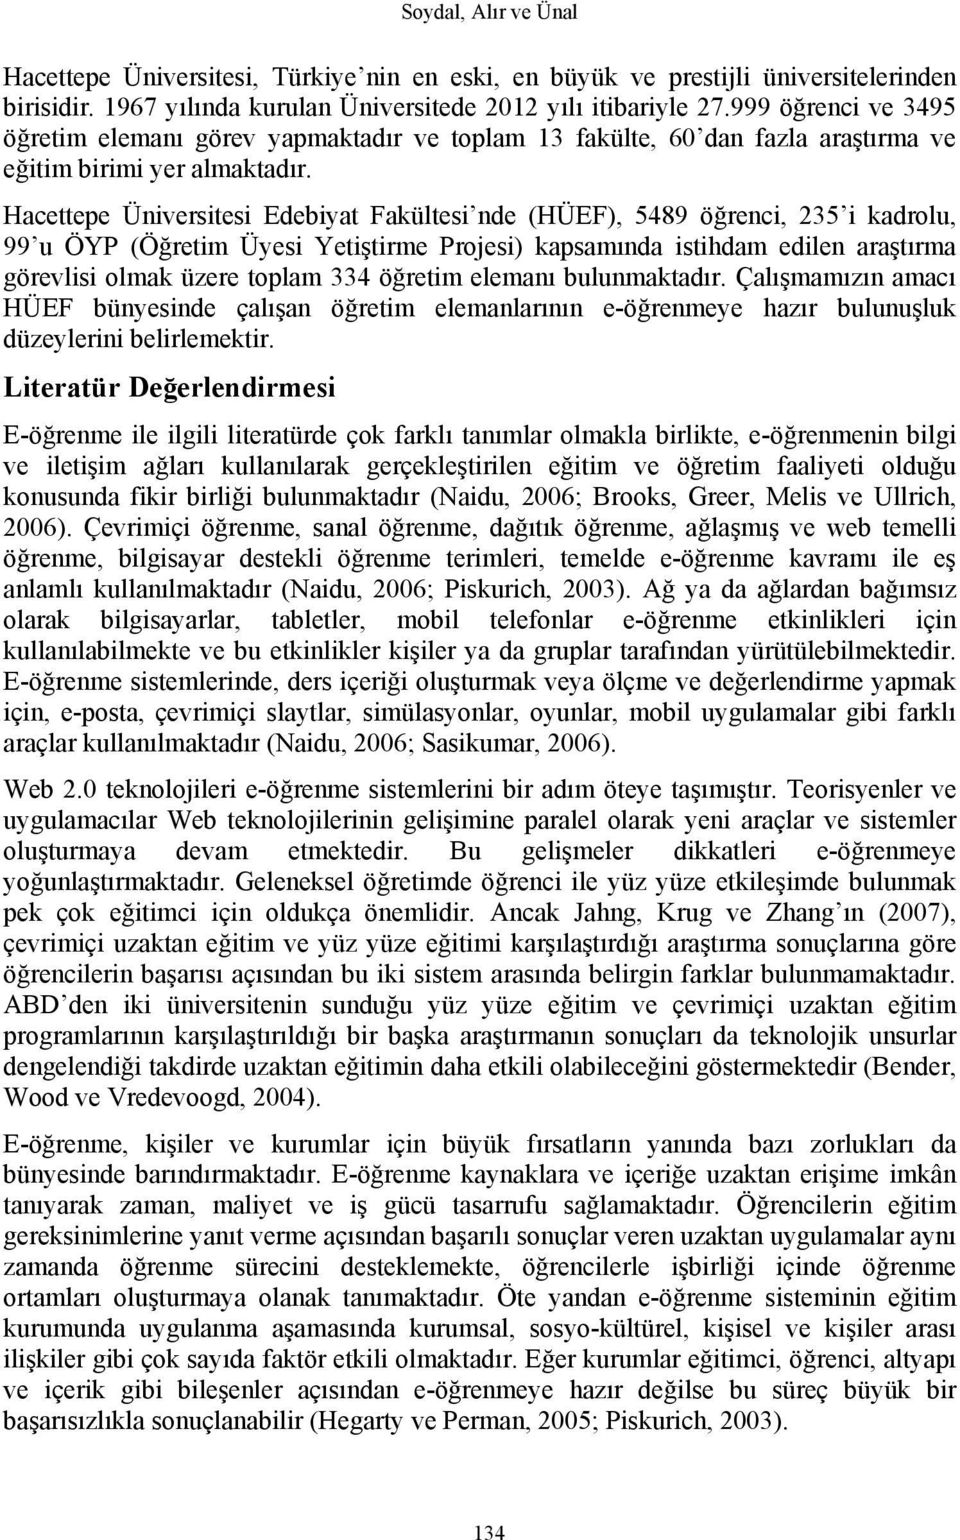 Hacettepe Üniversitesi Edebiyat Fakültesi nde (HÜEF), 5489 öğrenci, 235 i kadrolu, 99 u ÖYP (Öğretim Üyesi Yetiştirme Projesi) kapsamında istihdam edilen araştırma görevlisi olmak üzere toplam 334